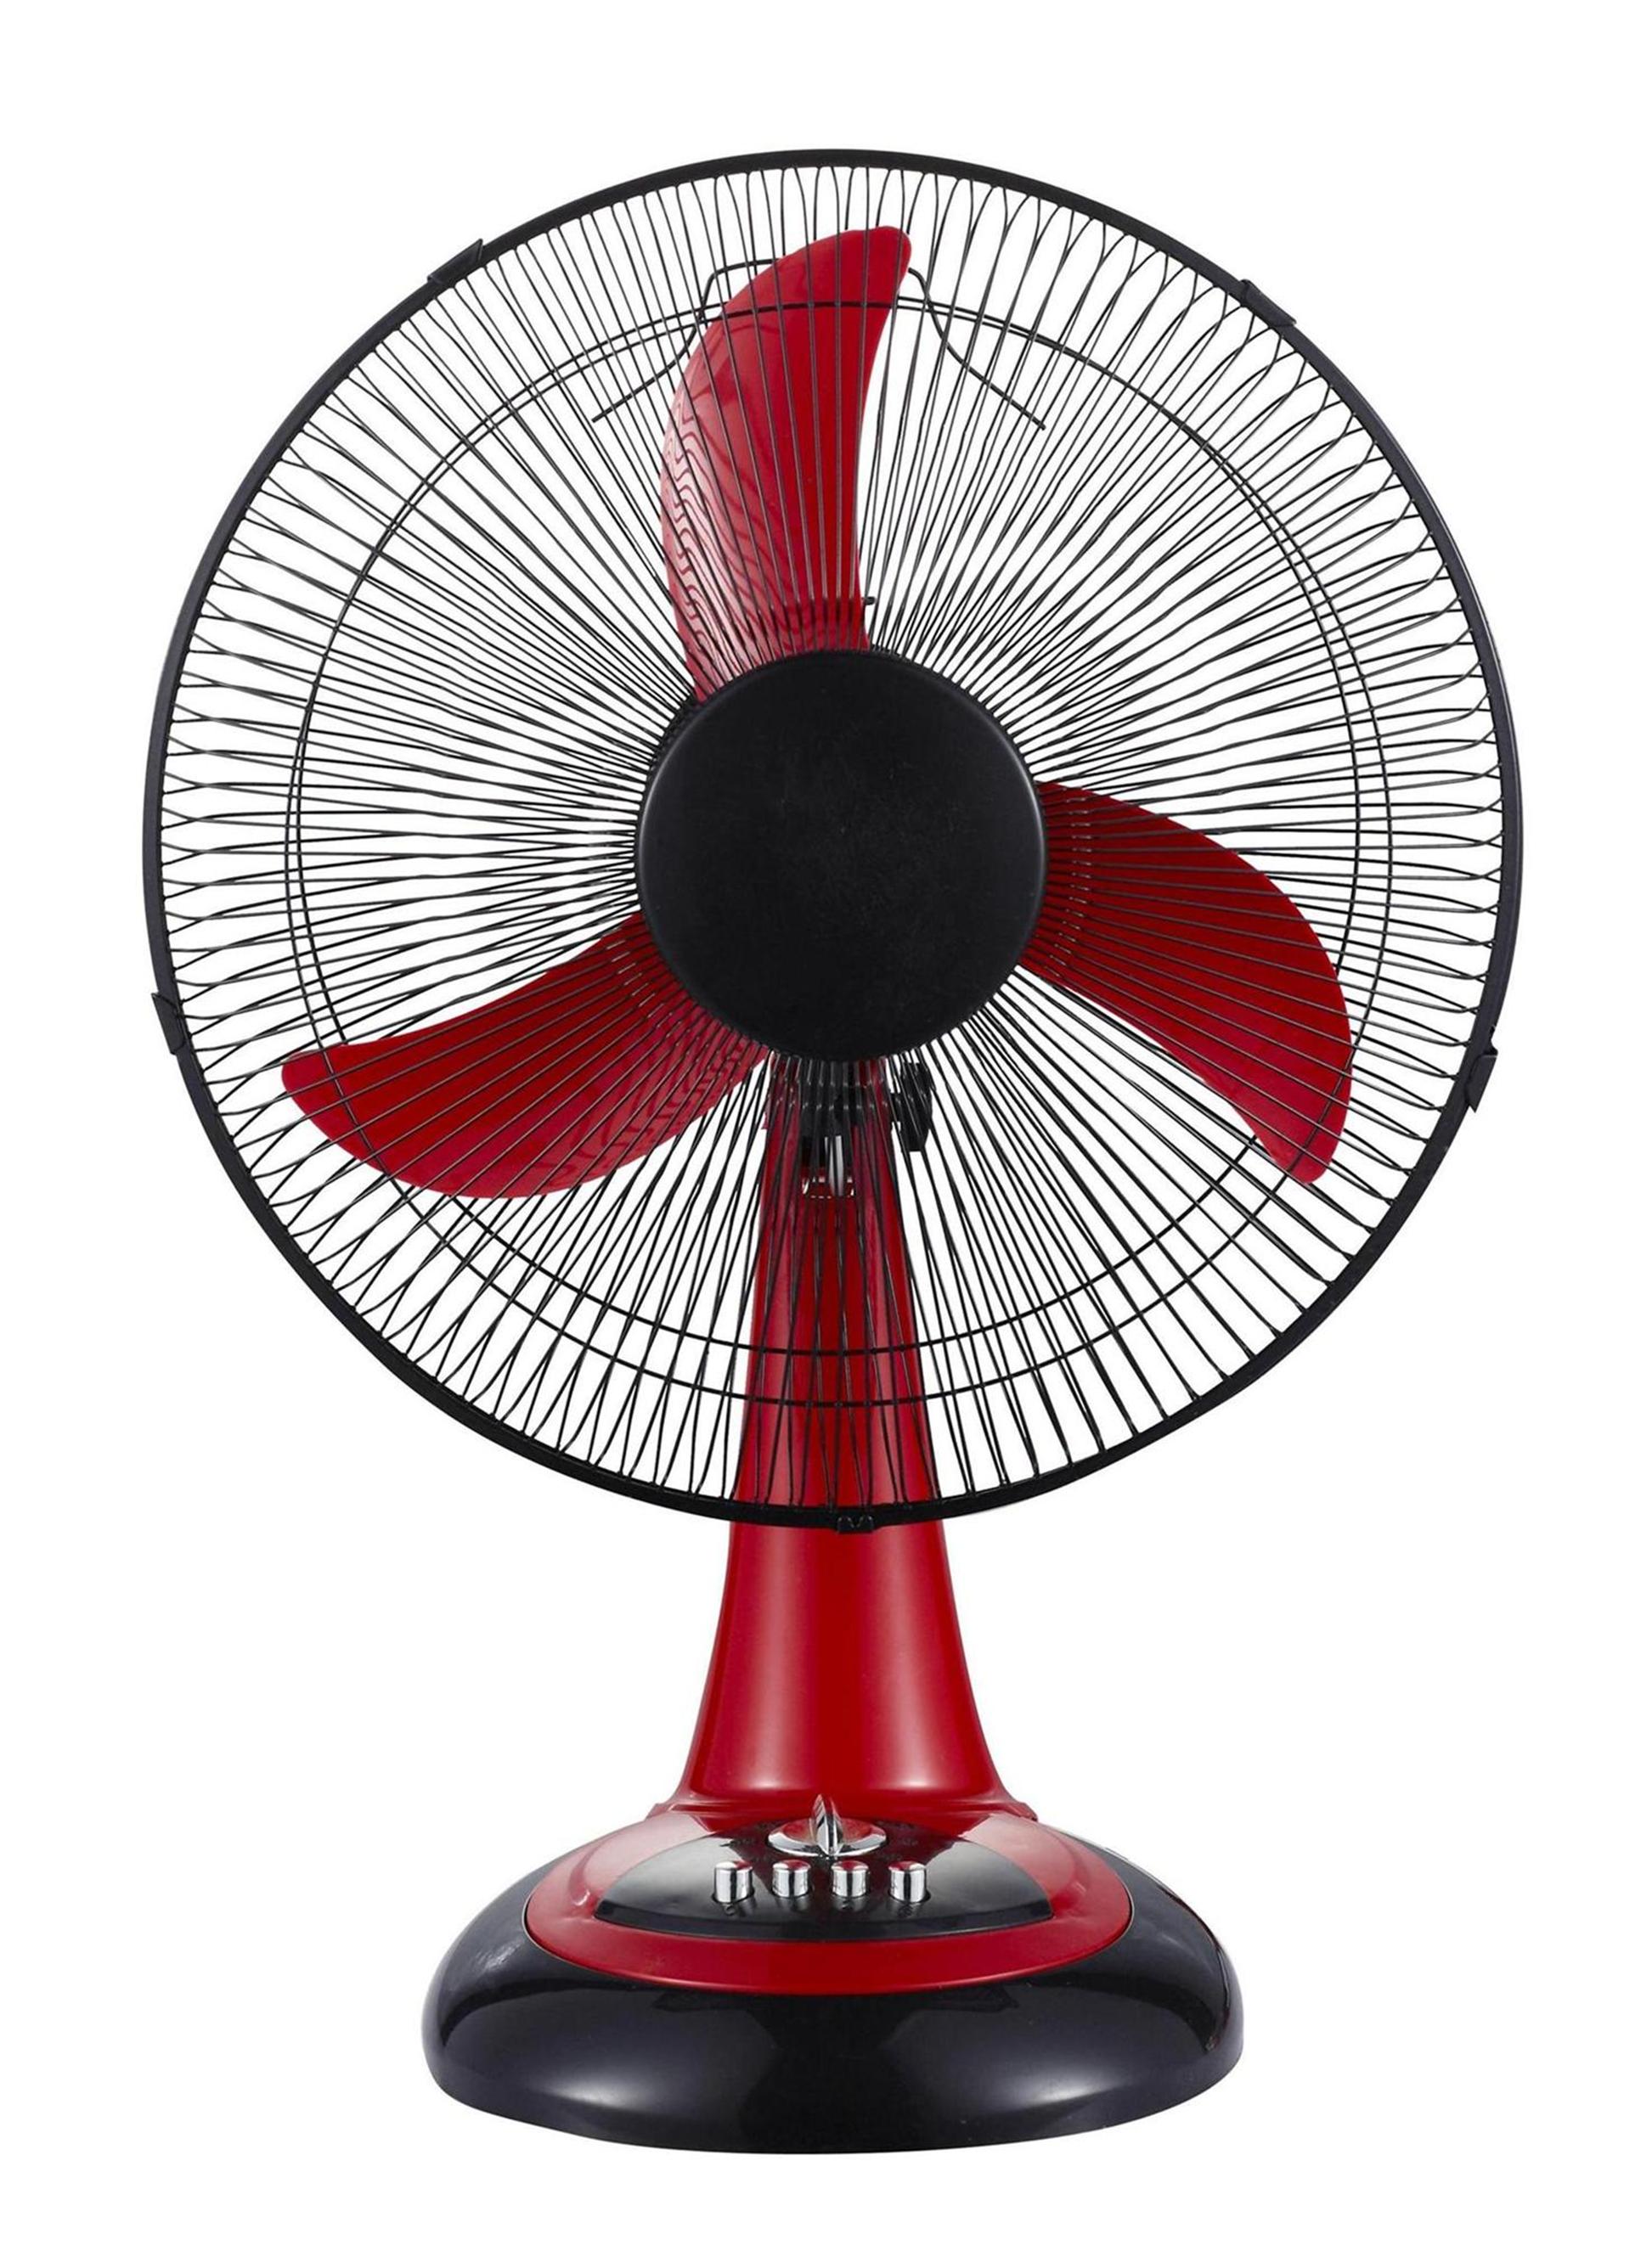 DC fan, Rechargeable fan and solar dc fan